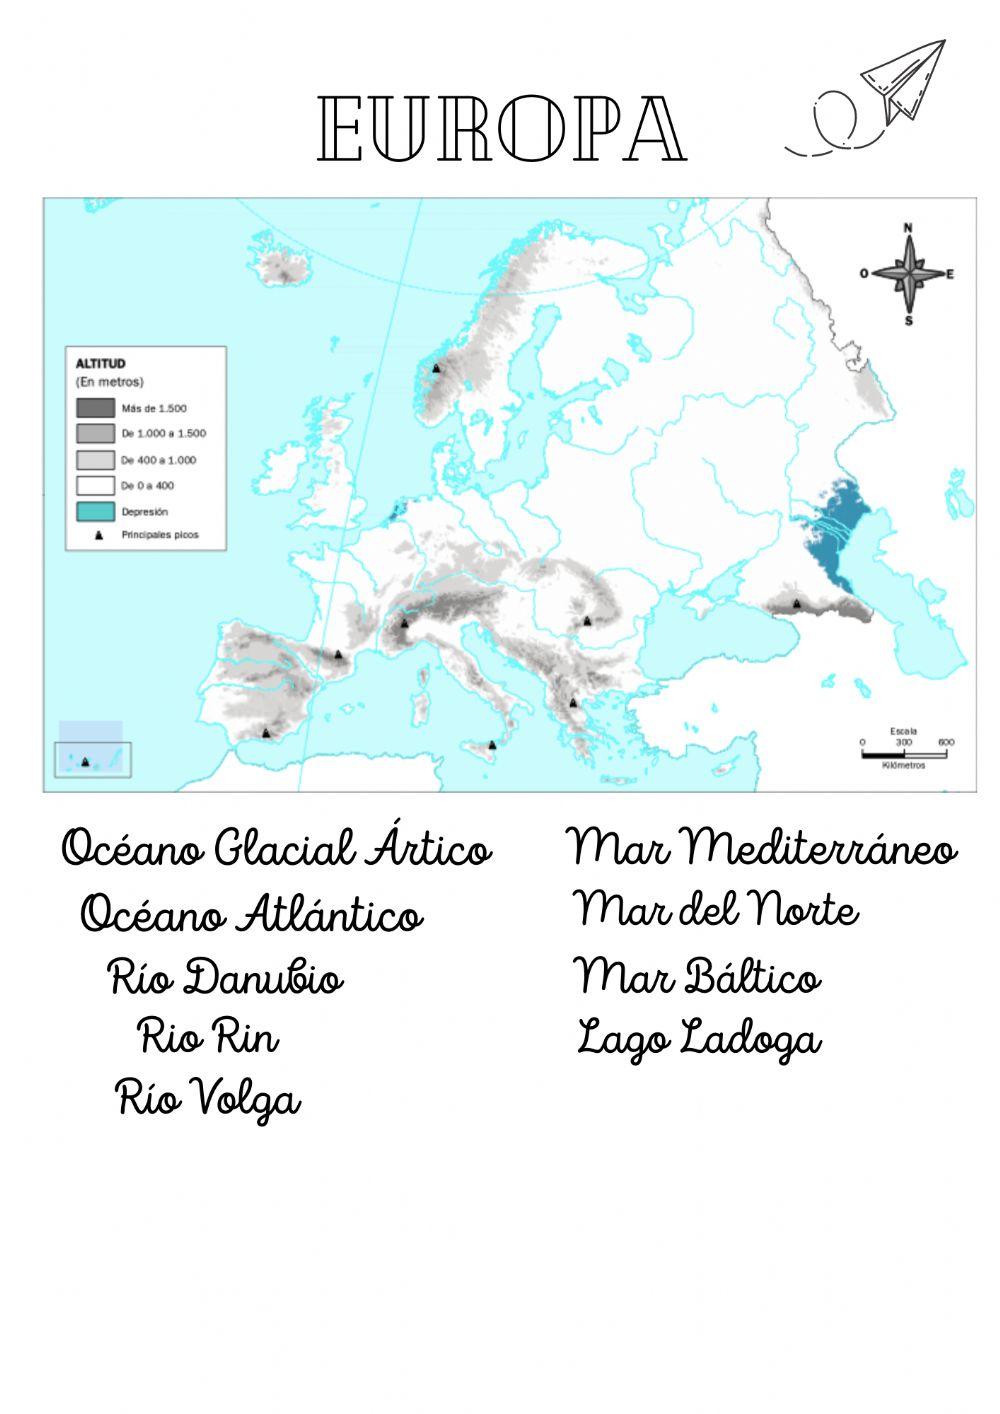 Europa. Mapa mudo fisico agua